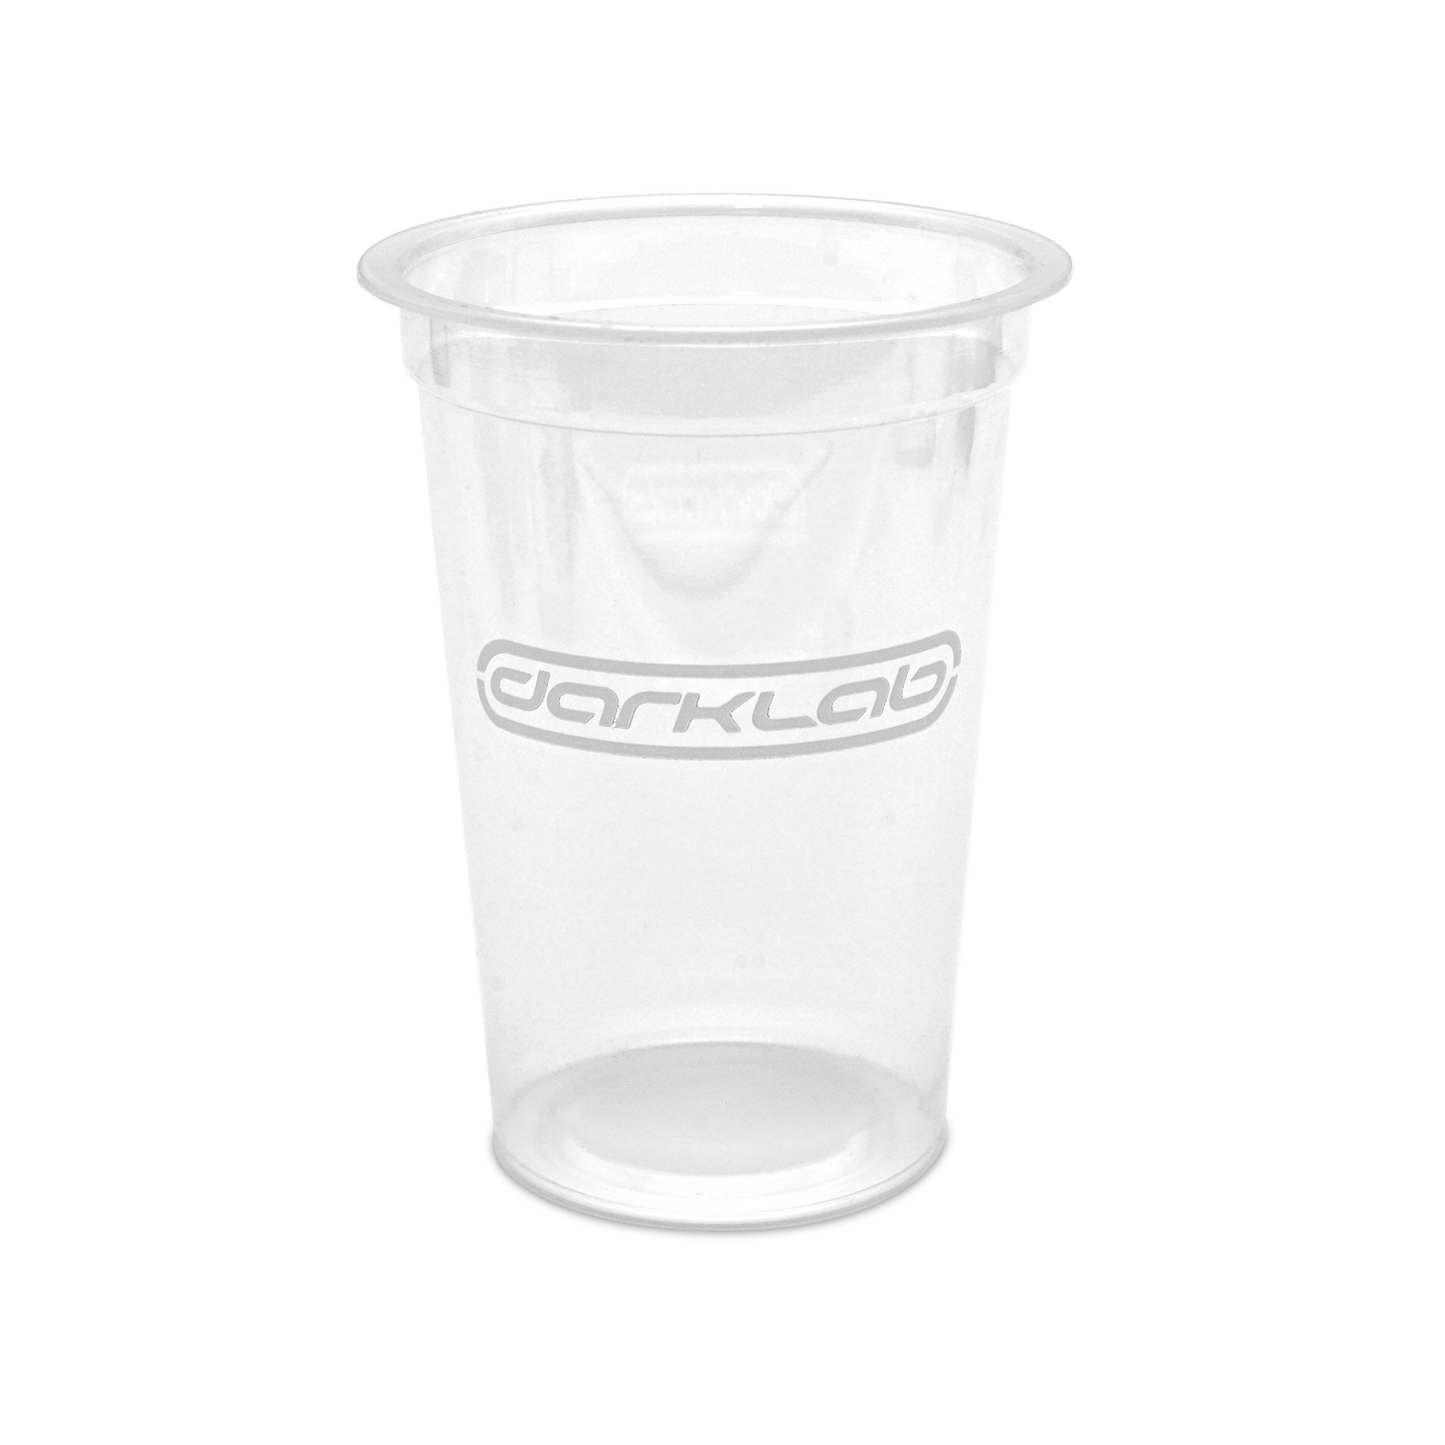 Darklab Cups 50 pcs per bag